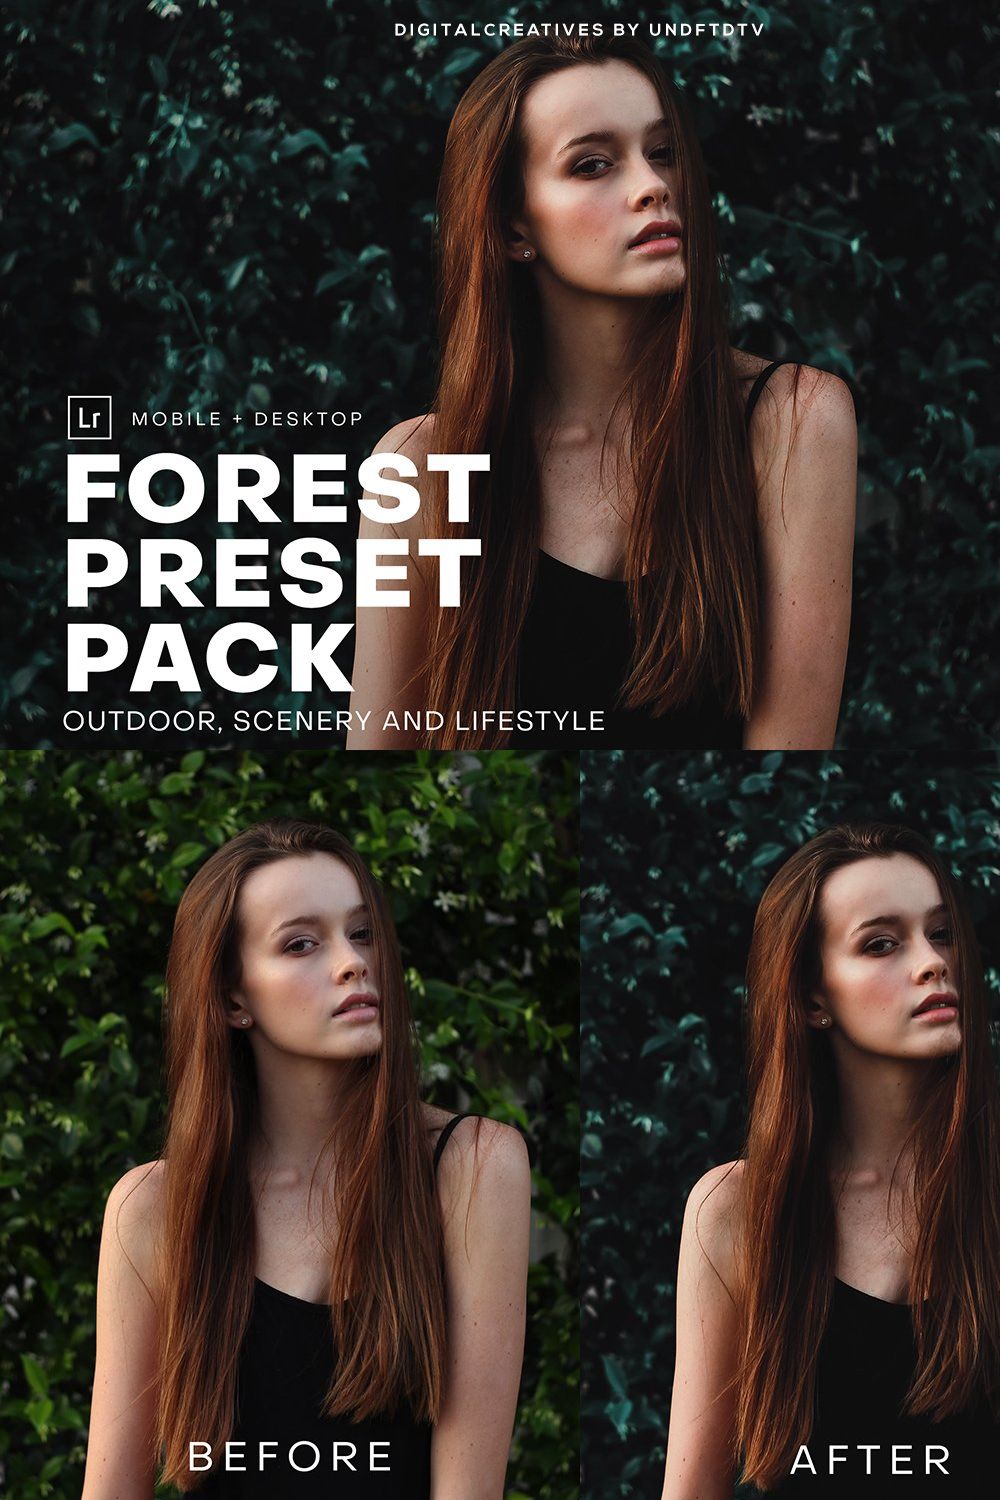 Forest Mobile & Desktop Lightroom pinterest preview image.